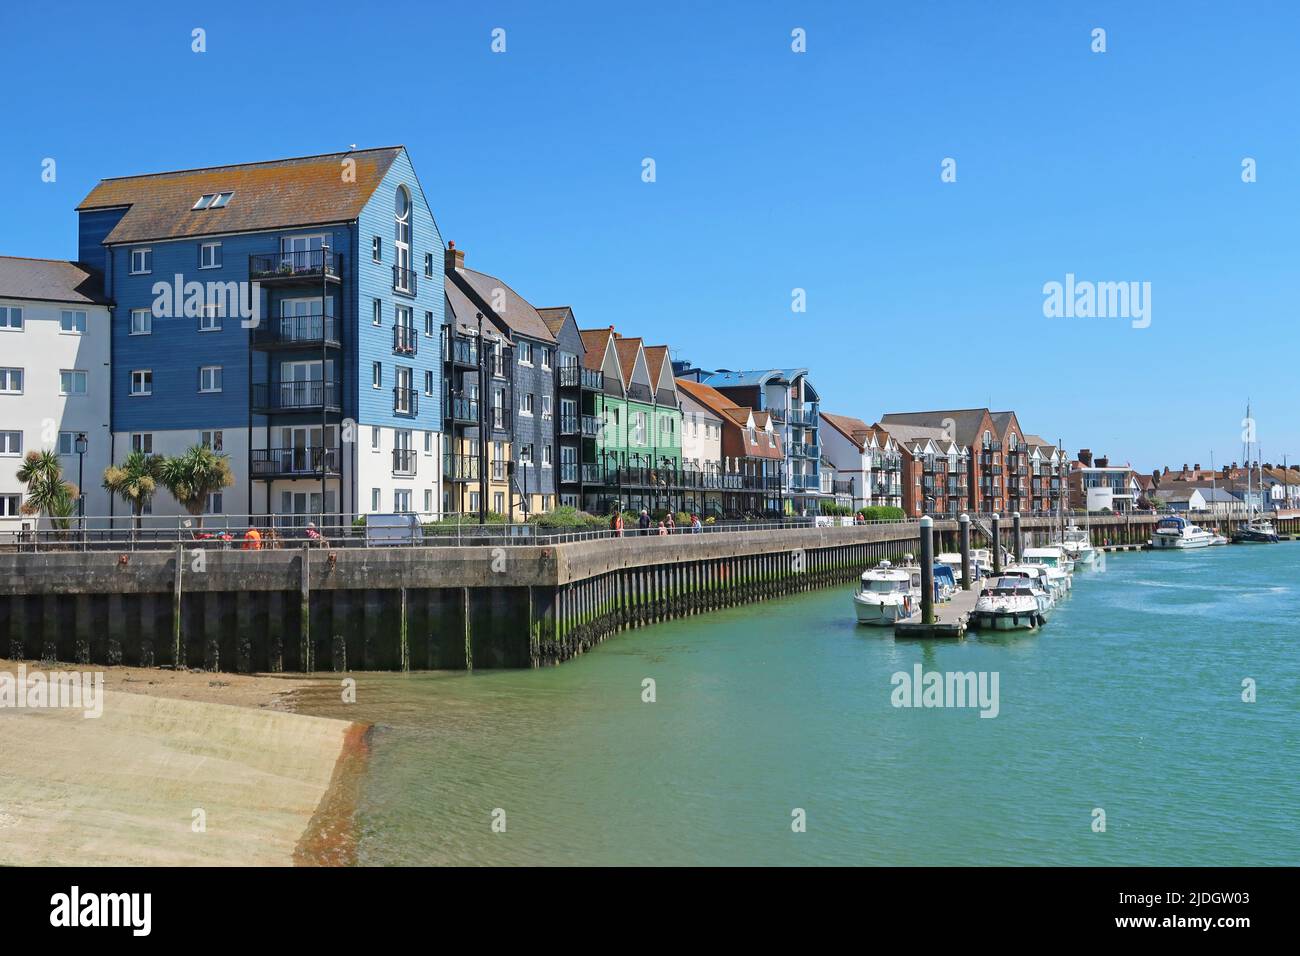 Littlehampton, West Sussex, Royaume-Uni. Récemment développé des logements en bord de mer sur la rive est de la rivière Arun. Montre le ponton et le sentier de promenade au bord de la rivière Banque D'Images